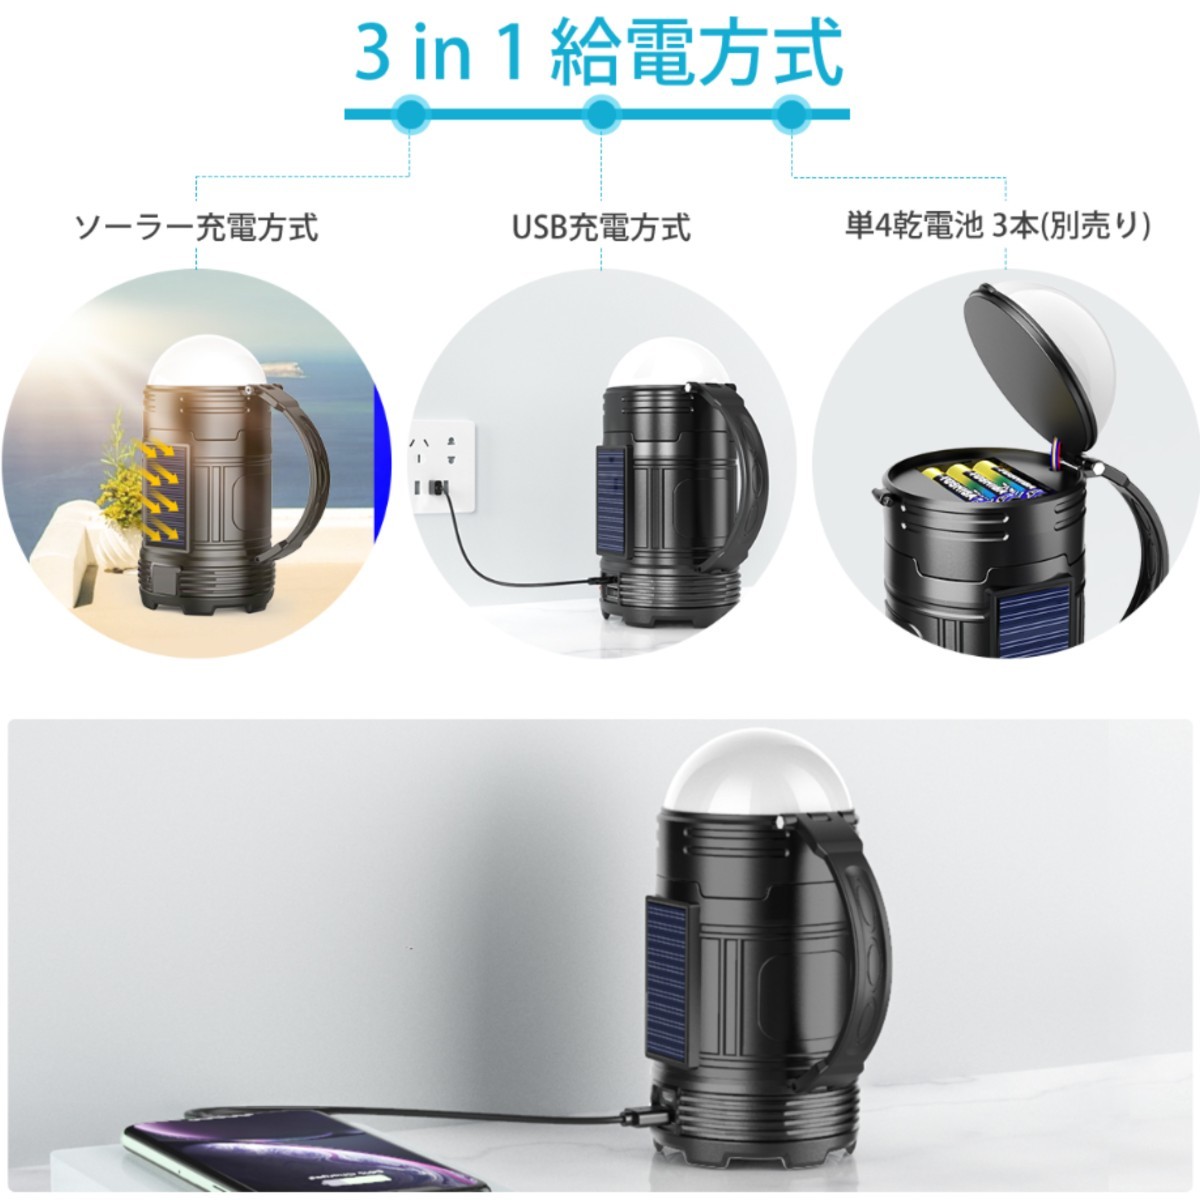 【2個セット】LEDランタン 懐中電灯 アウトドア キャンプ  防災 USB充電 キャンプランタン 高輝度